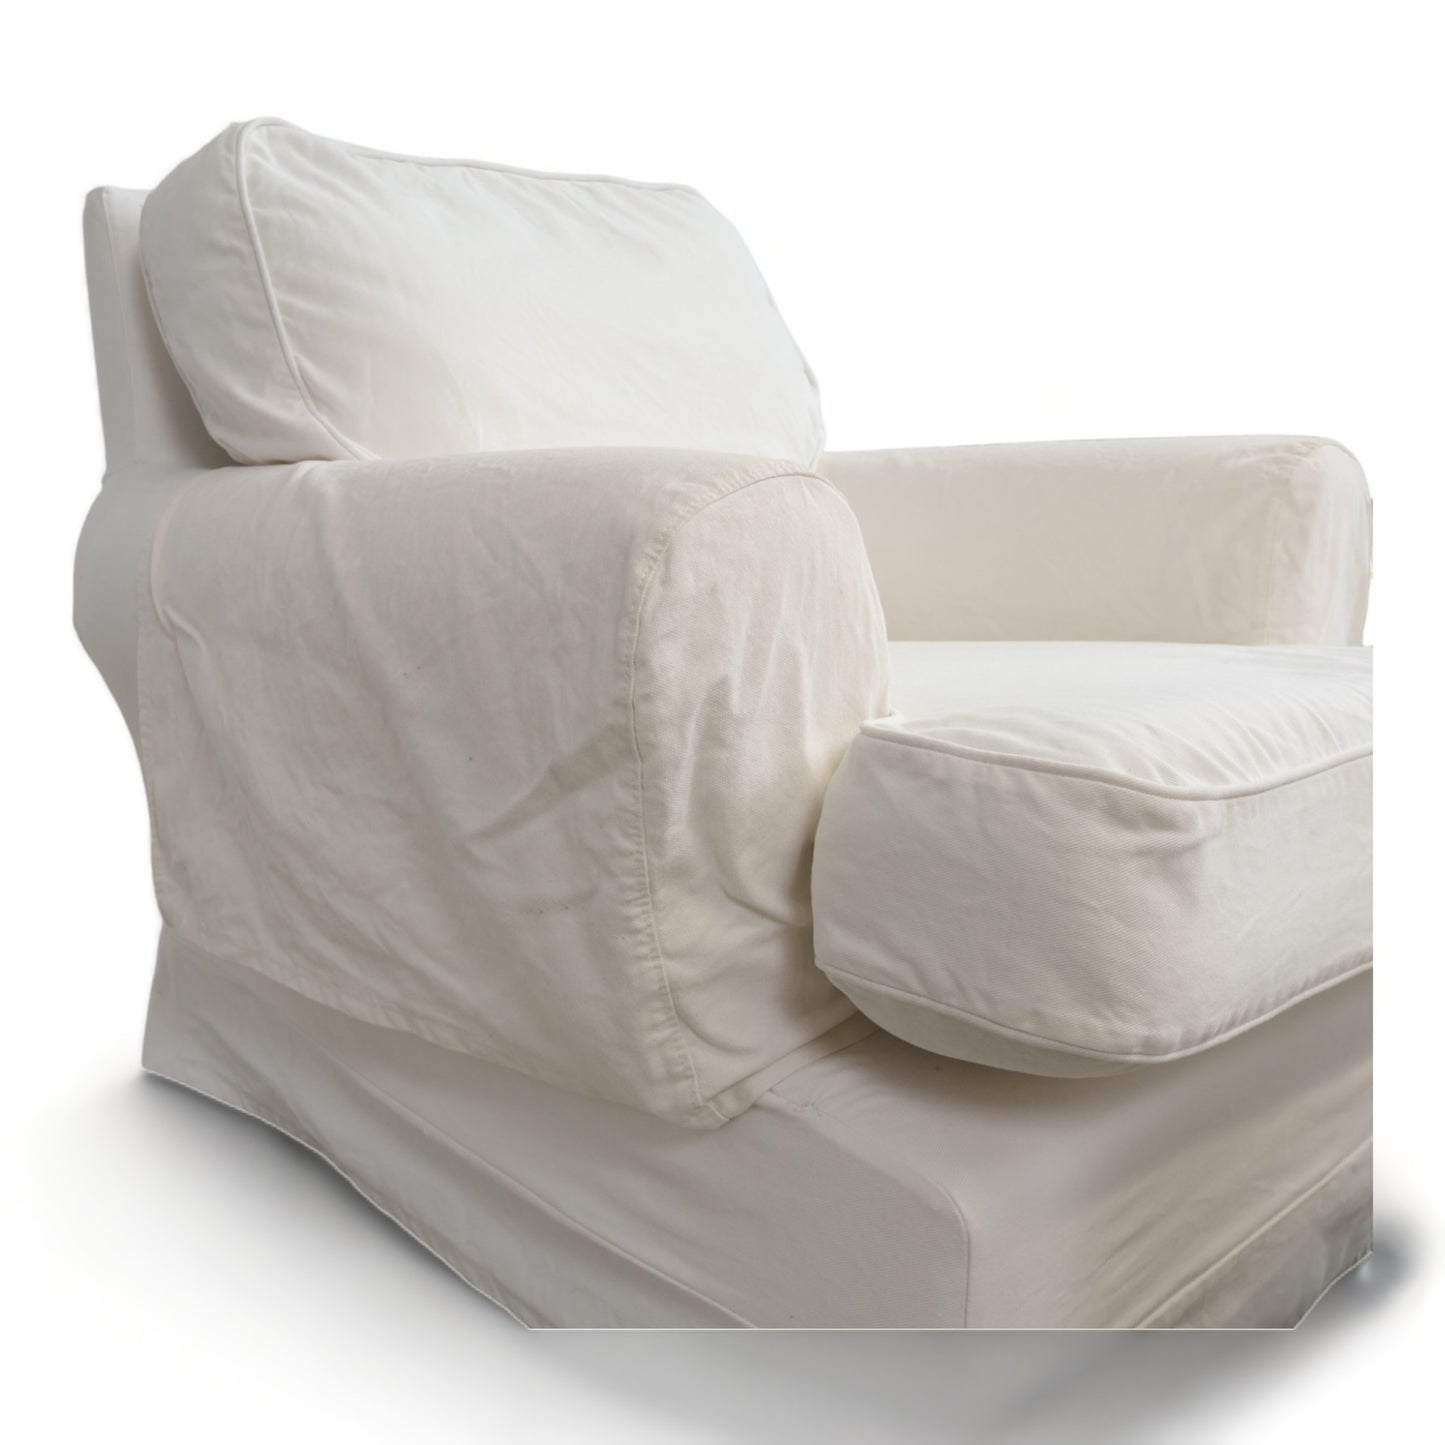 Nyrenset | Hvit IKEA Barkaby lenestol og puff